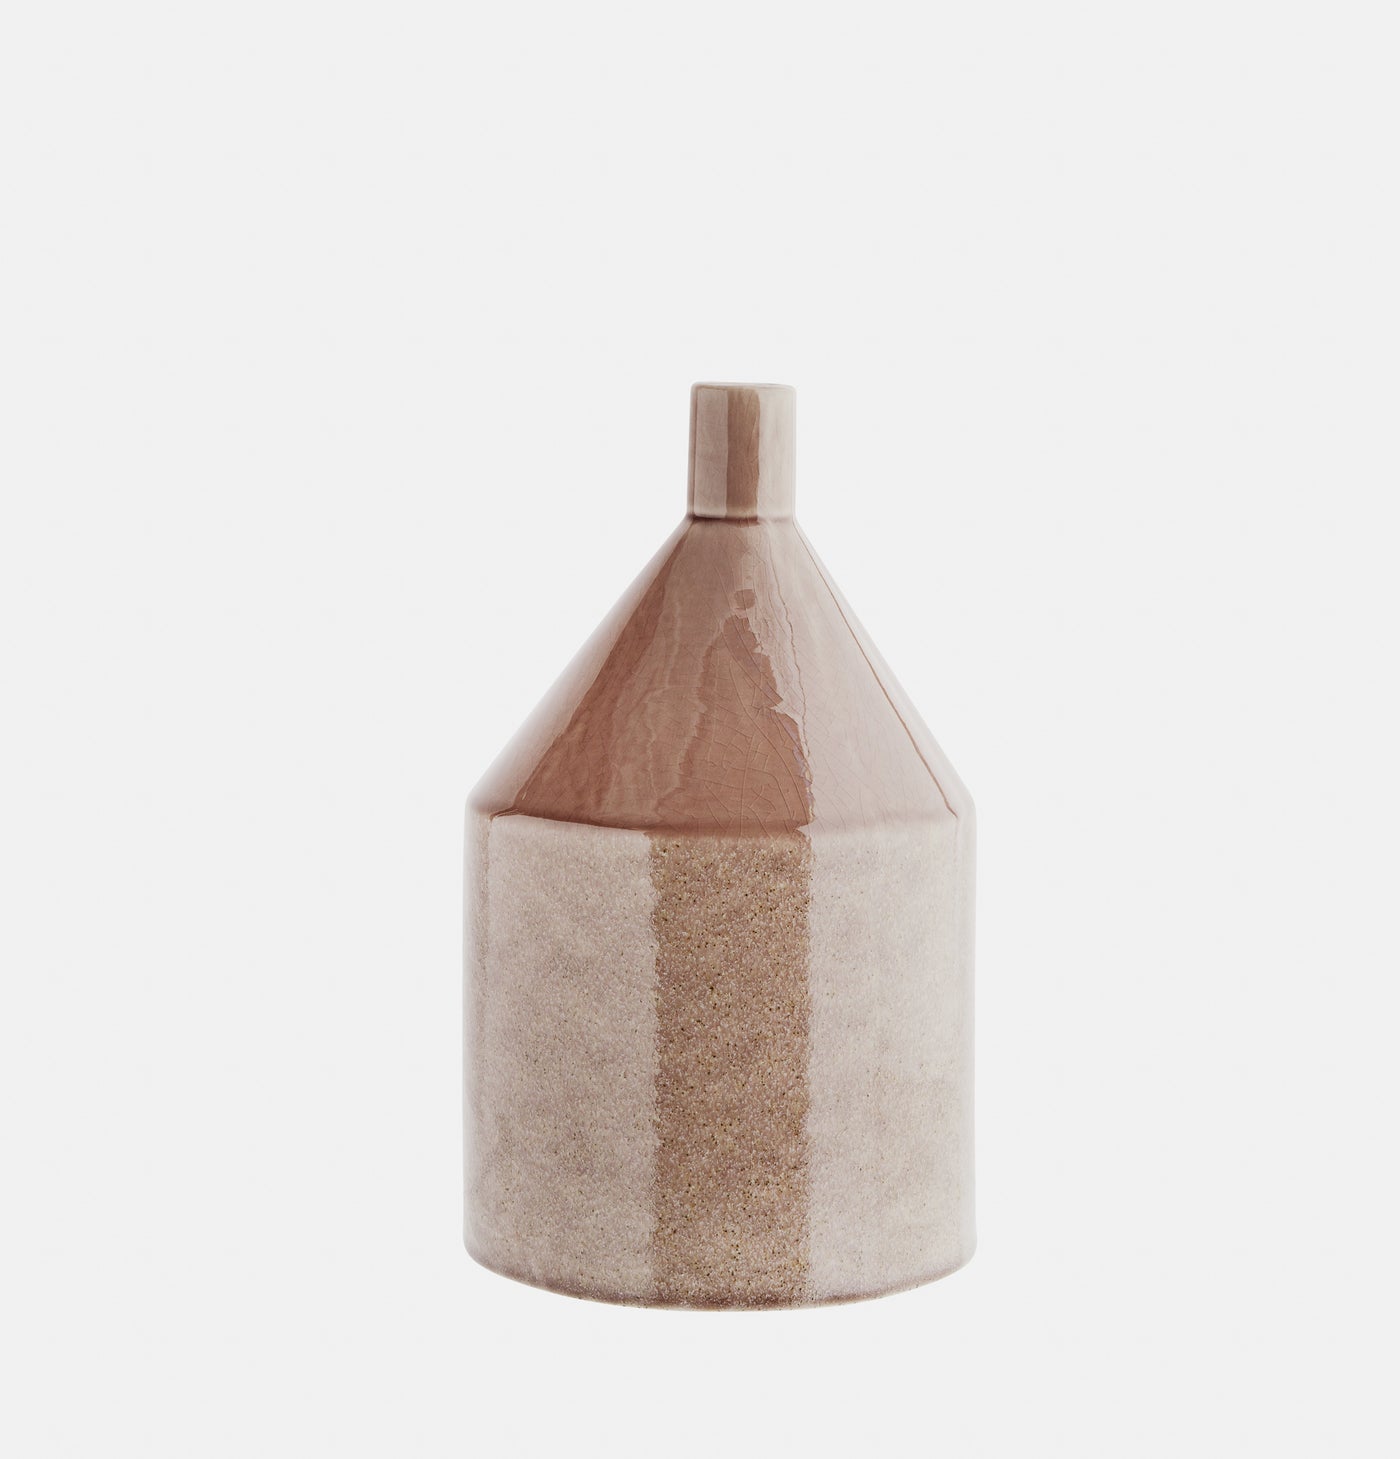 Caramel stoneware vase